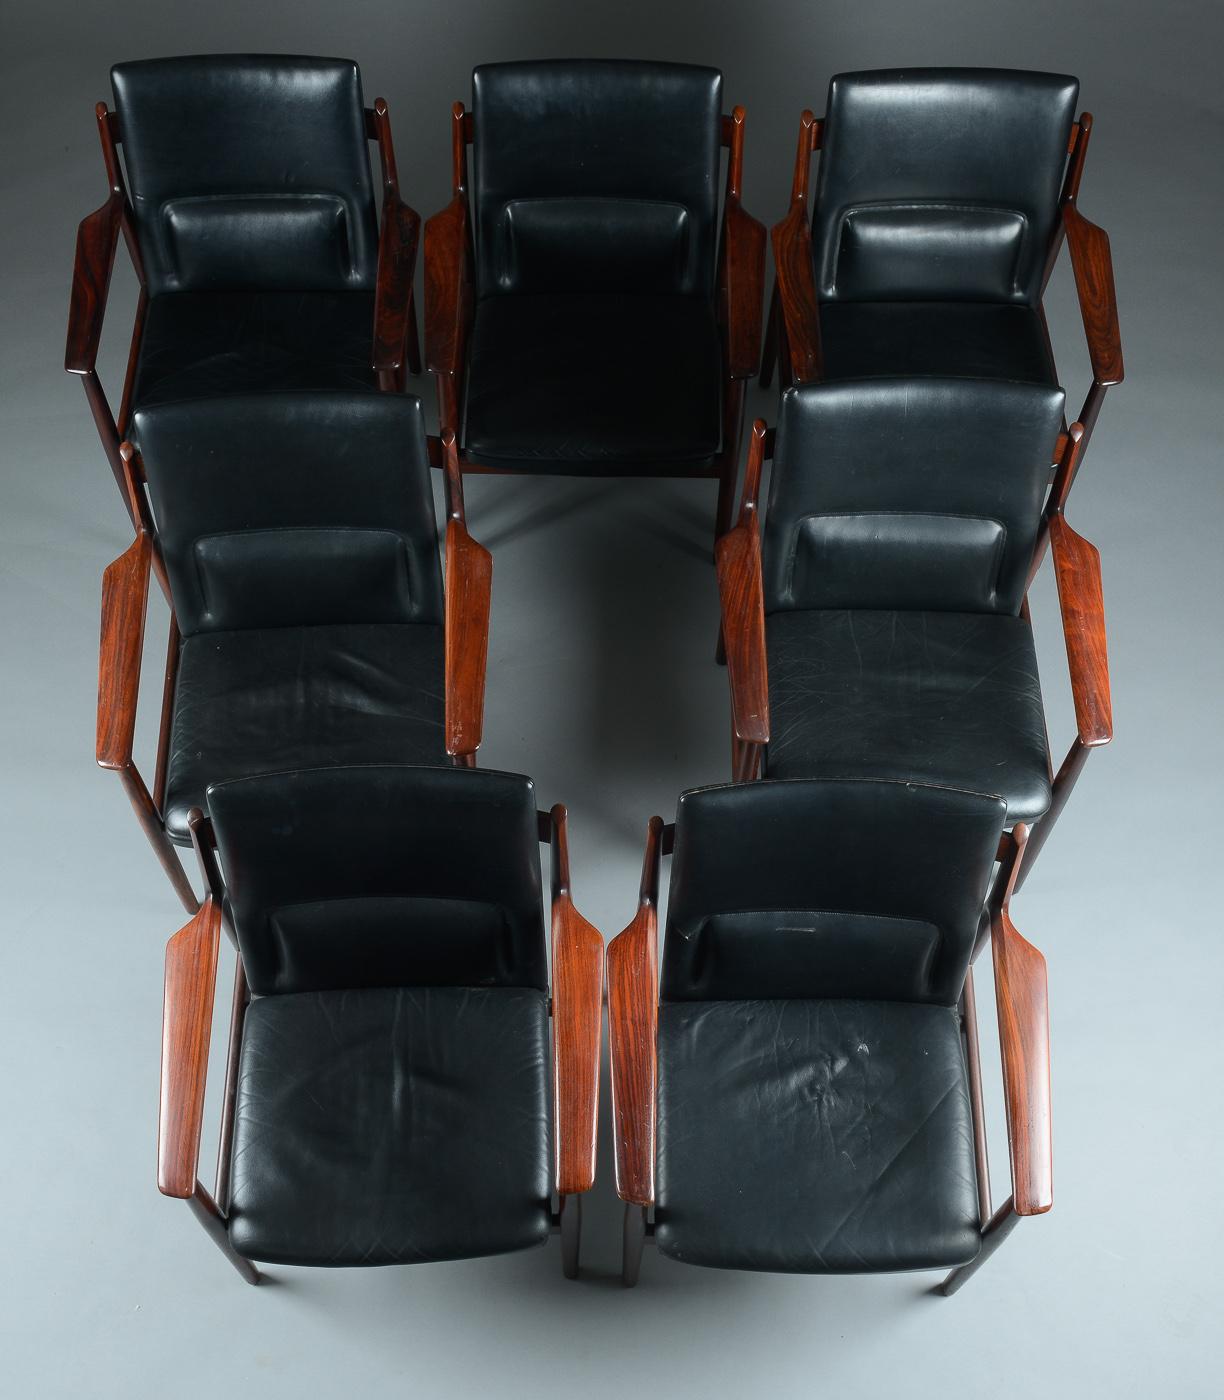 Abgebildet ist ein Satz von sieben Sesseln, die einzeln verkauft werden und von Arne Vodder entworfen und in den 1960er Jahren von Sibast hergestellt wurden. Das schwarze Original-Leder ist in gutem Zustand und weist leichte Gebrauchsspuren auf.